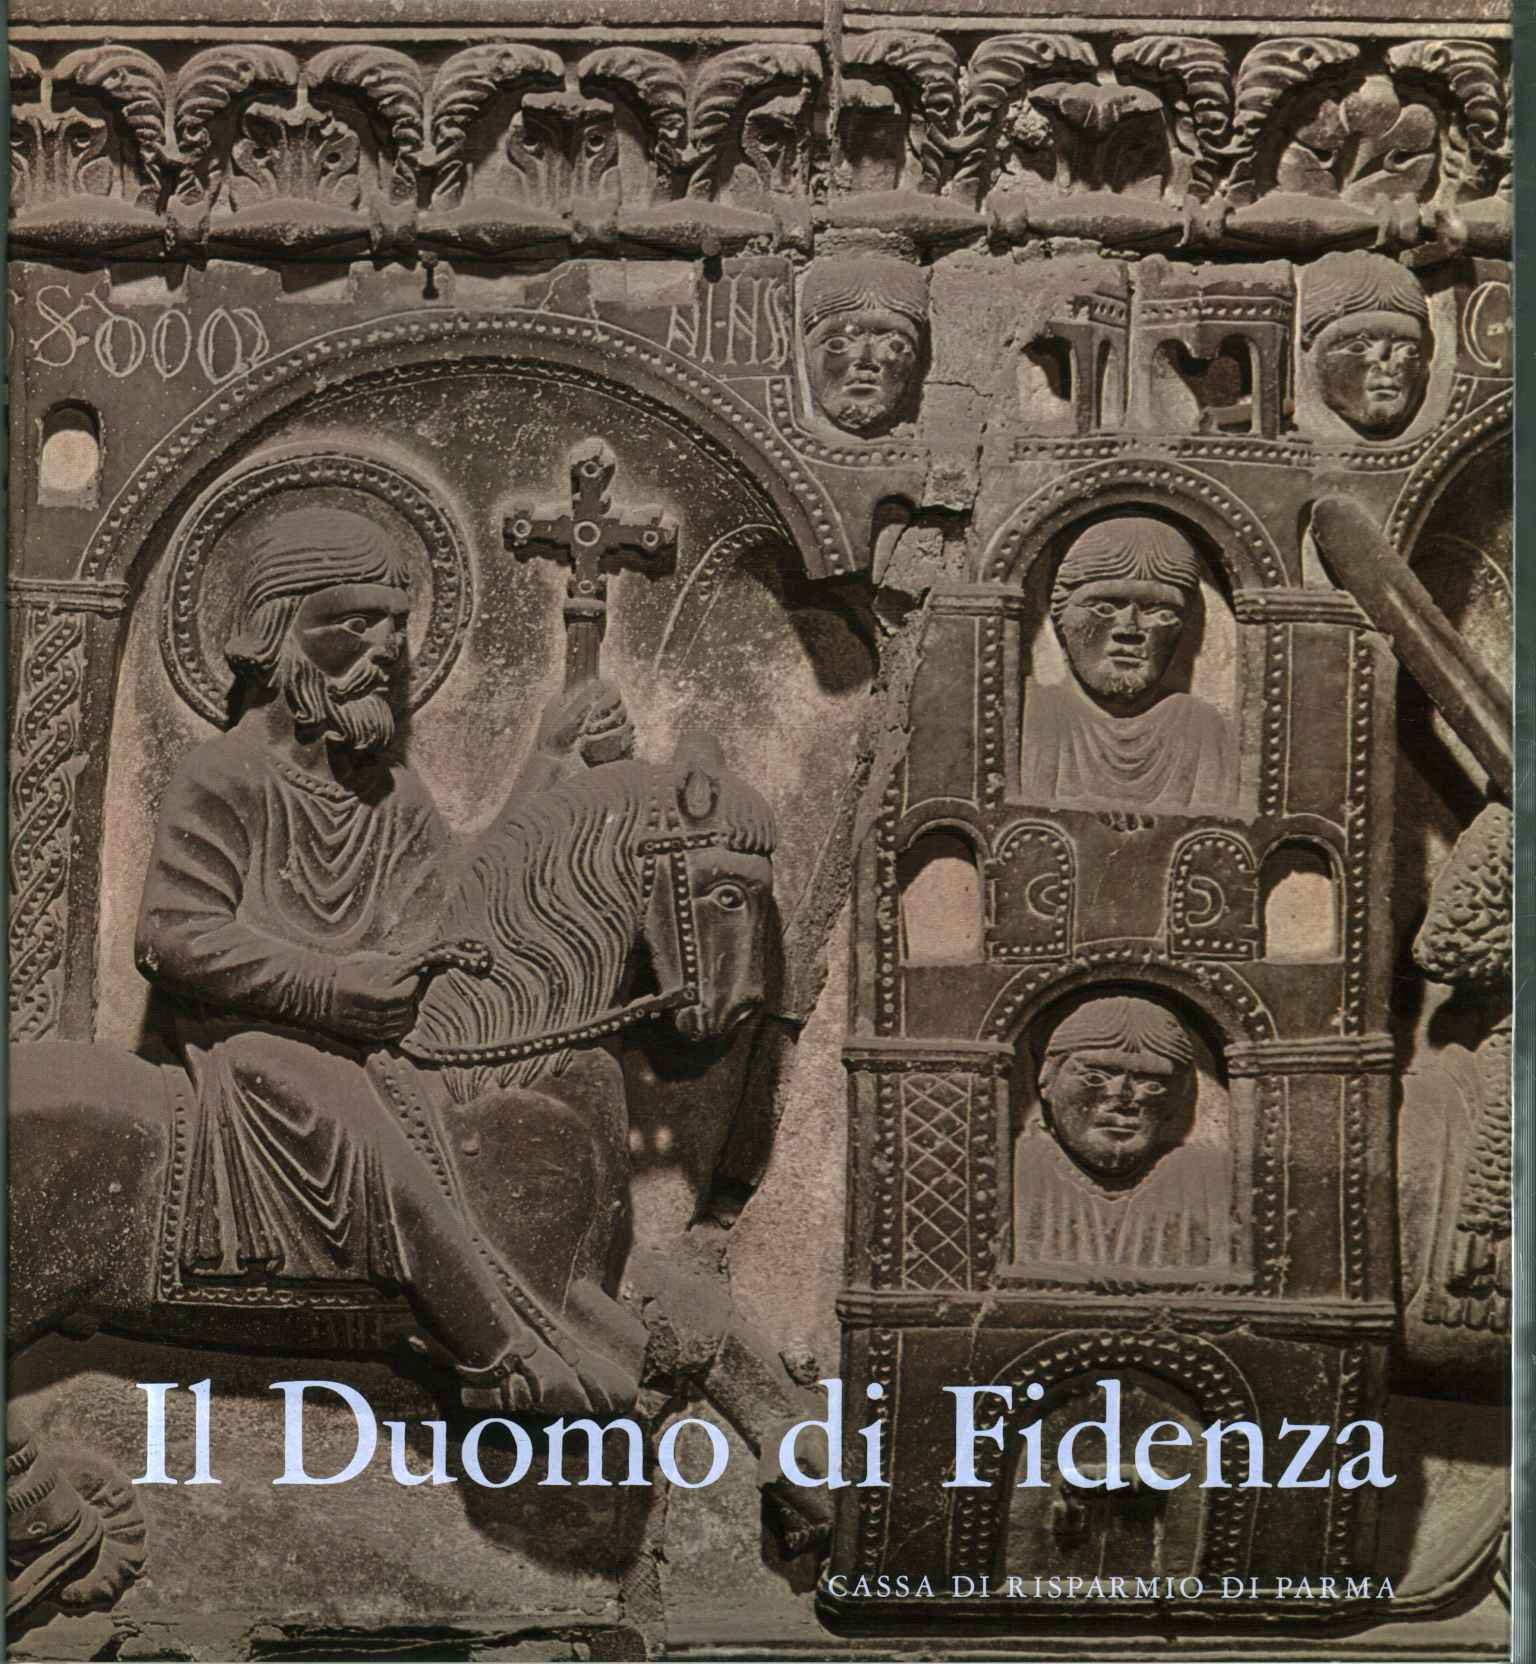 Il Duomo di Fidenza - Roberto Tassi (Cassa di Risparmio di Parma) [[1973]]